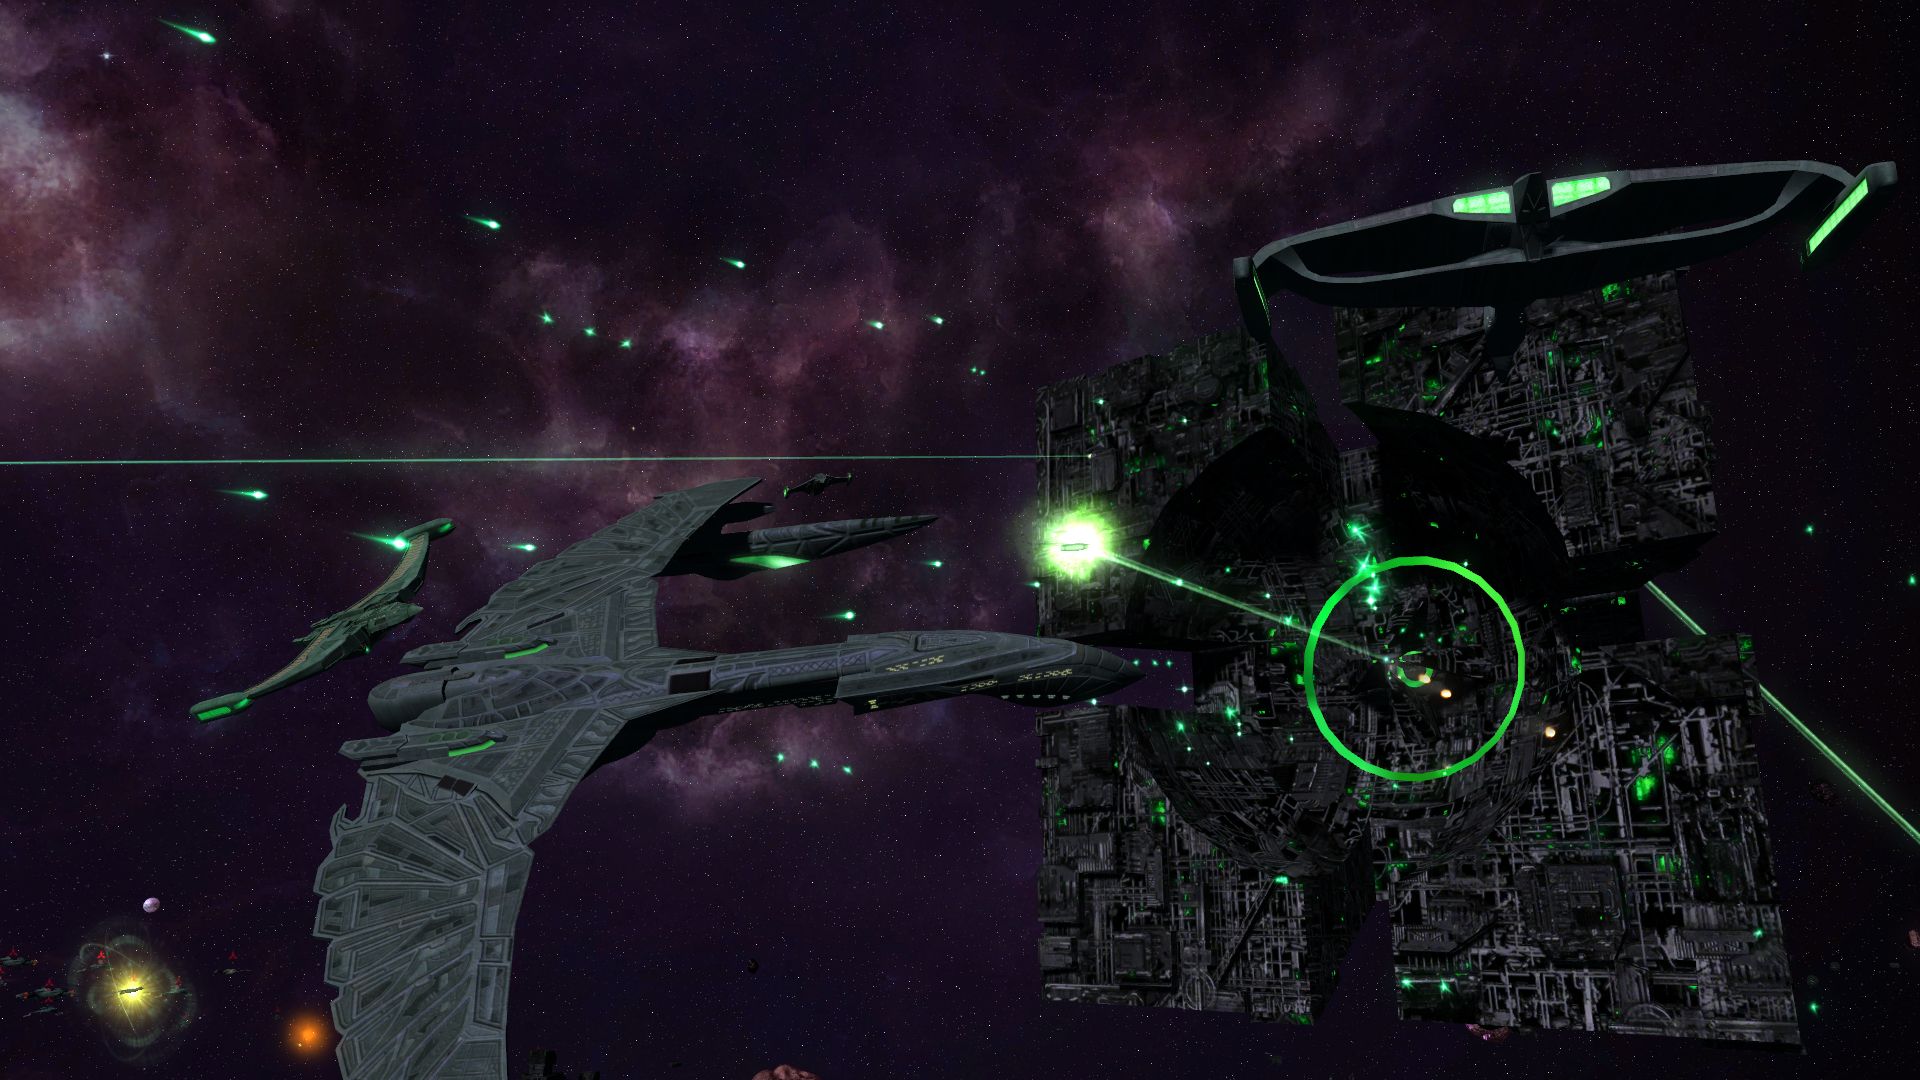 Borg Star Trek Background Wars Wallpaper